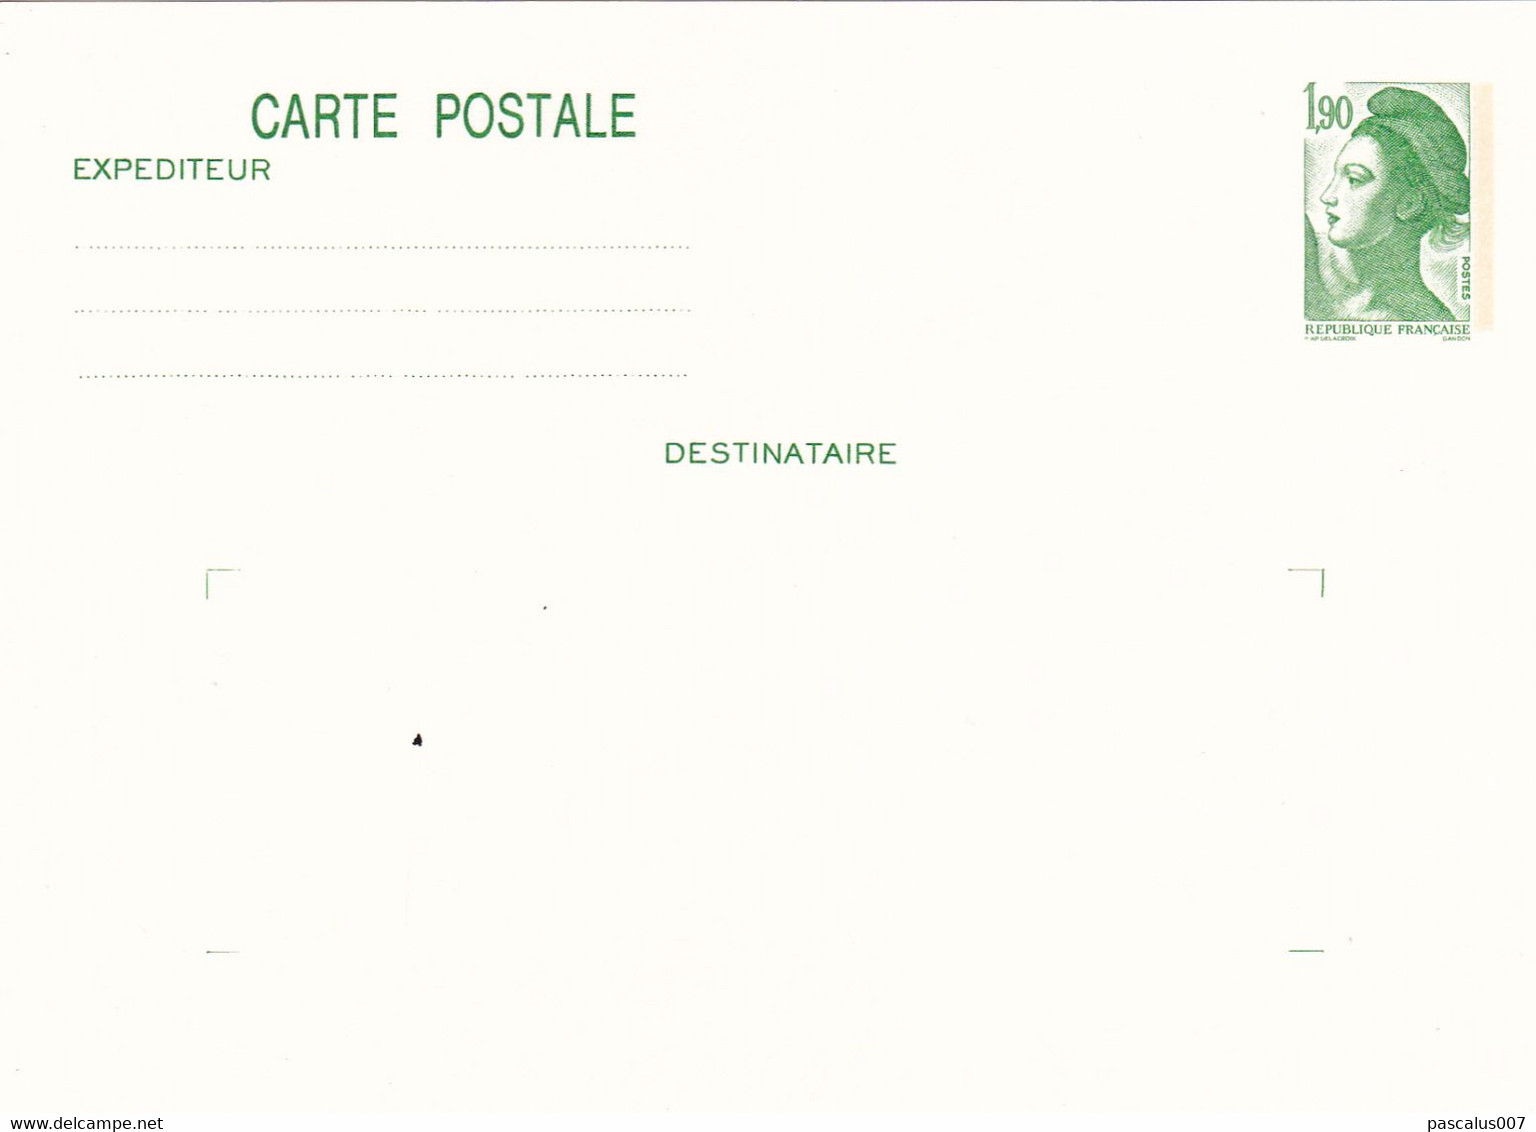 B01-373 2 Cartes Postales Entiers Postaux France 1982 Belgica - Konvolute: Ganzsachen & PAP